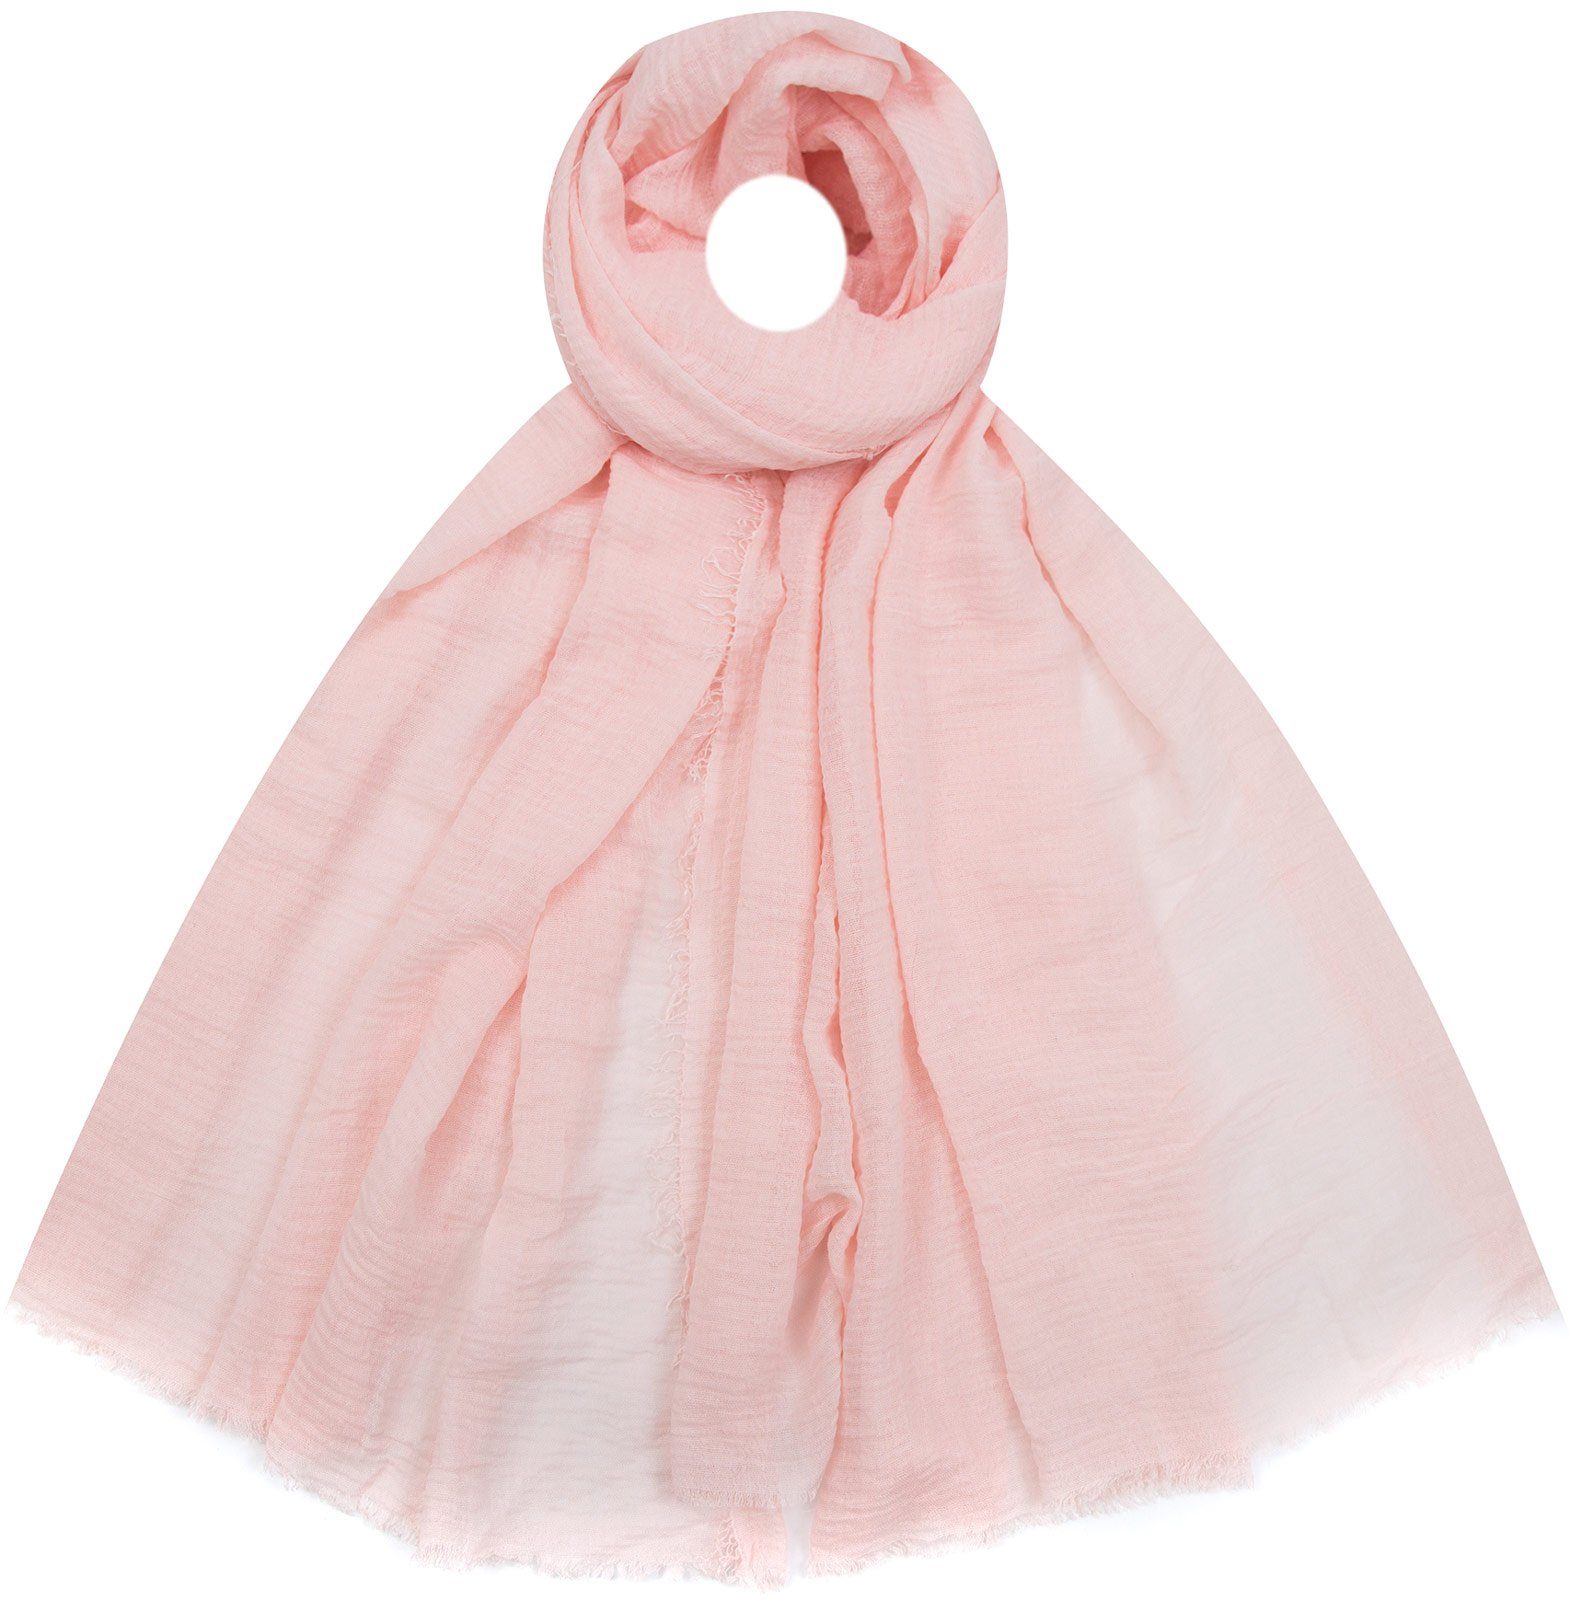 【berühmt】 Faera Modeschal, Damen weich und unifarben rosa Schal leicht Crinkel-Schal